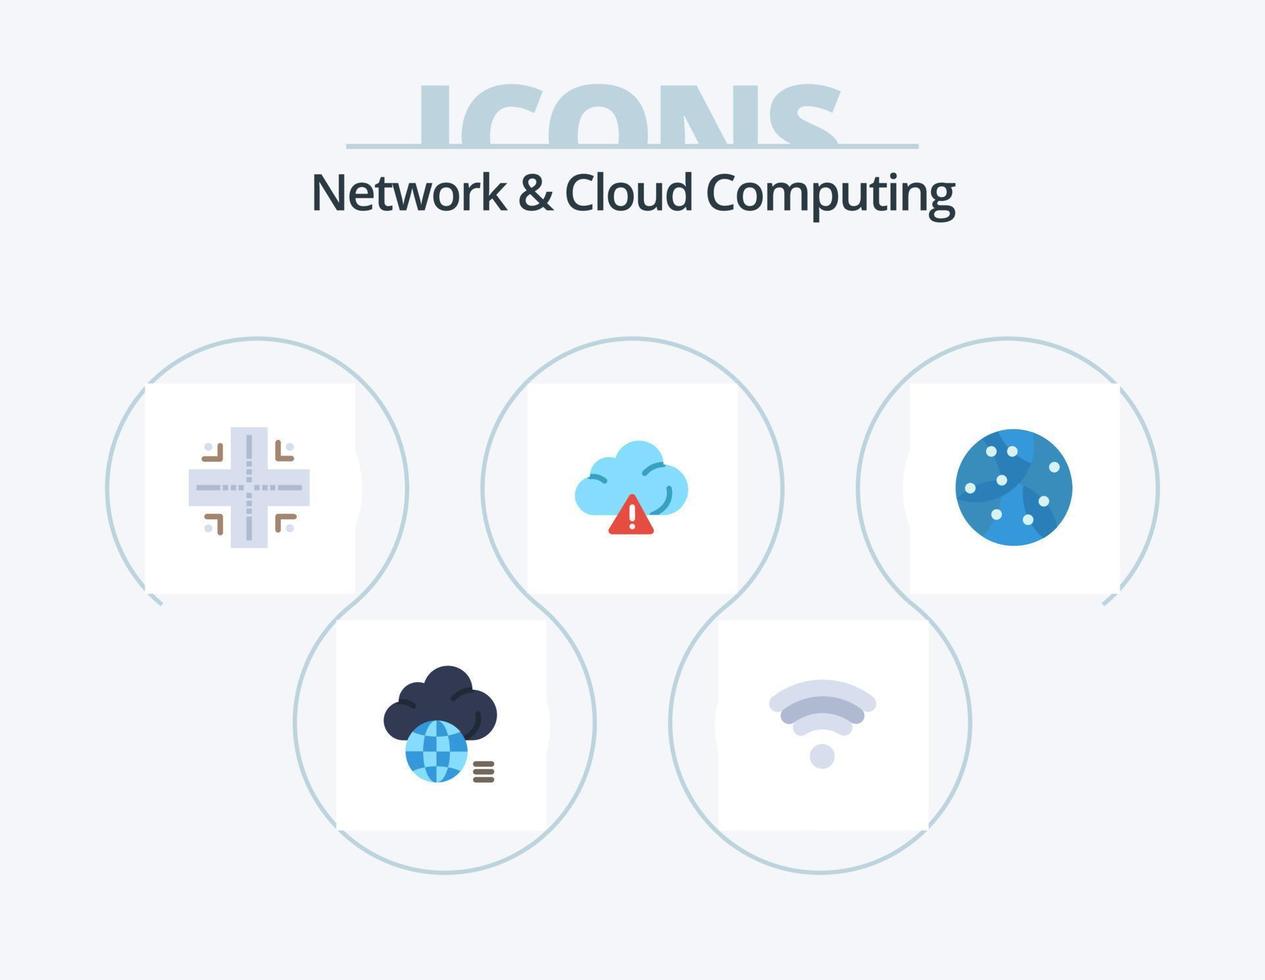 paquete de iconos planos de red y computación en nube 5 diseño de iconos. tecnología. Internet. mapa. global. alerta vector